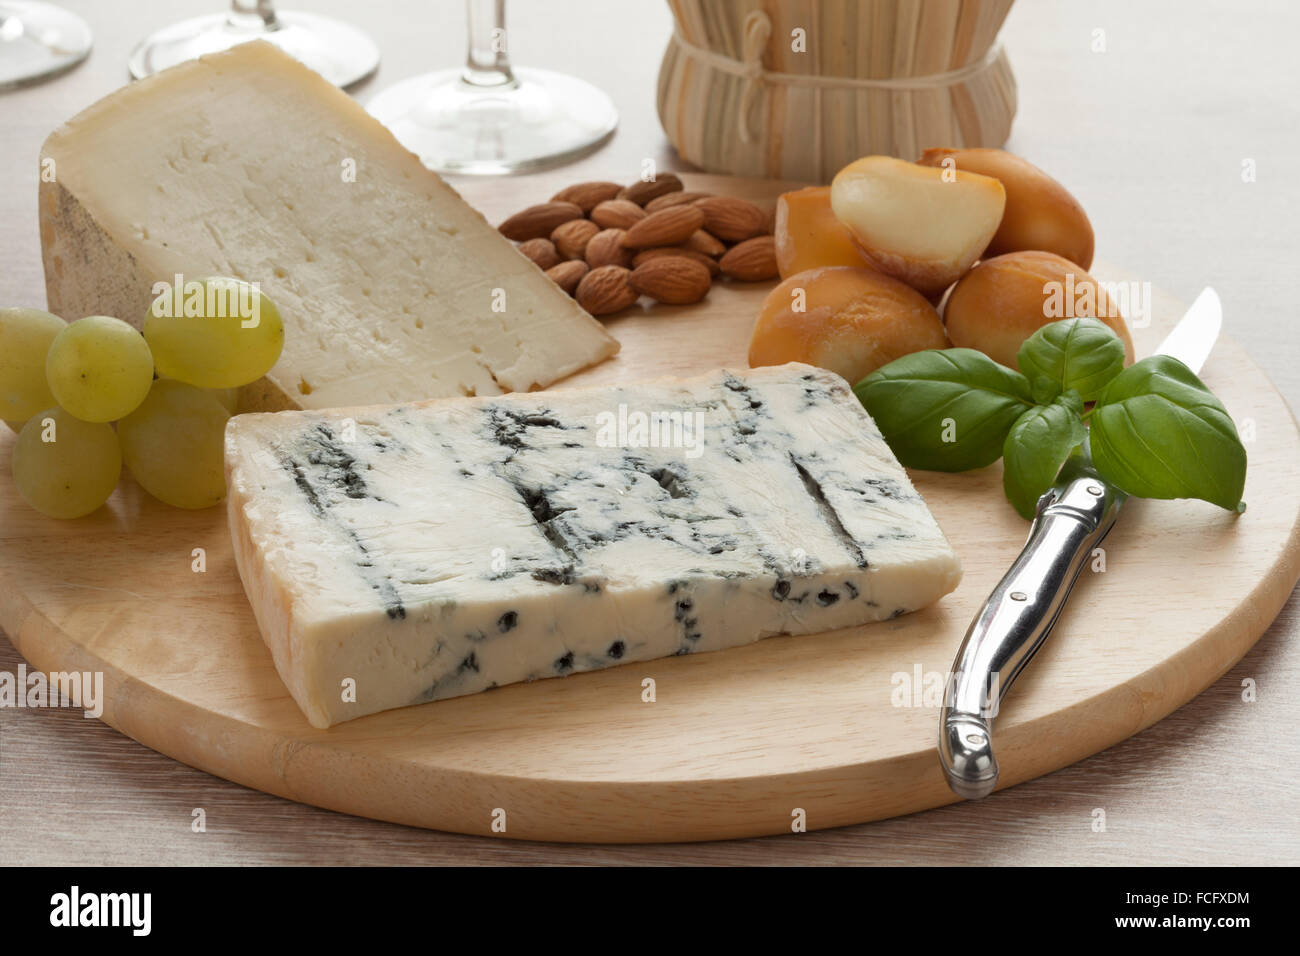 Plato de queso italiano con mozzarella ahumado, gorgonzola picante y toma piemontese Foto de stock